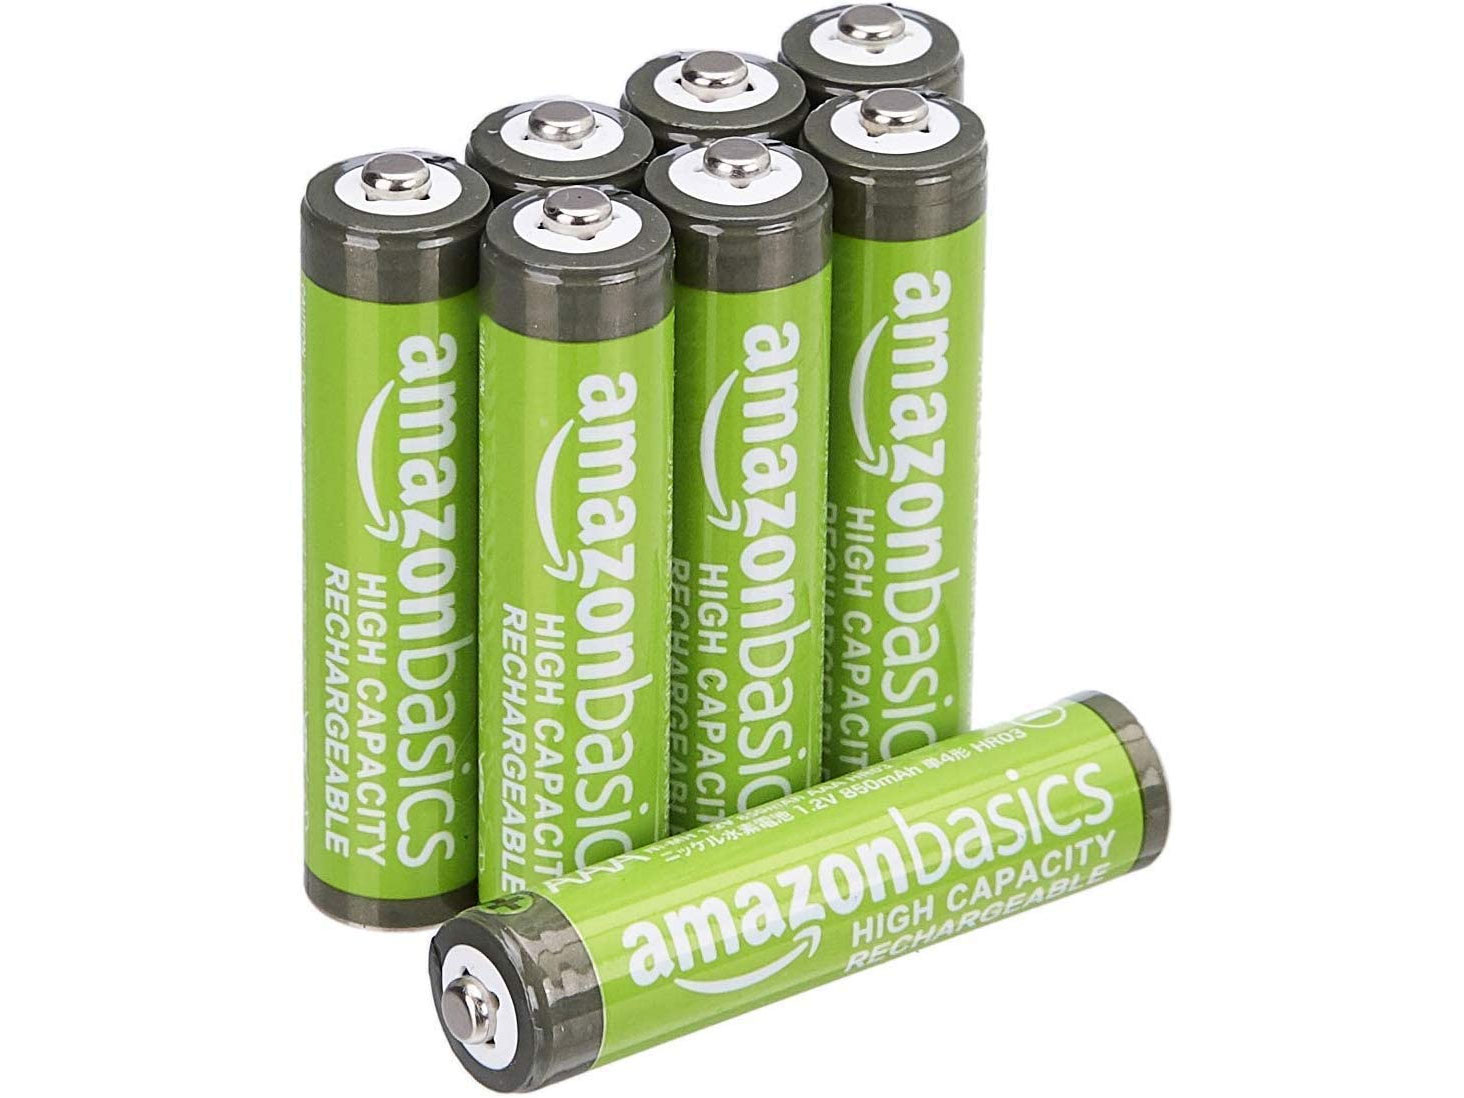 Amazon Basics AAA Rechargeable Batteries (8 Pack)只賣$8.06